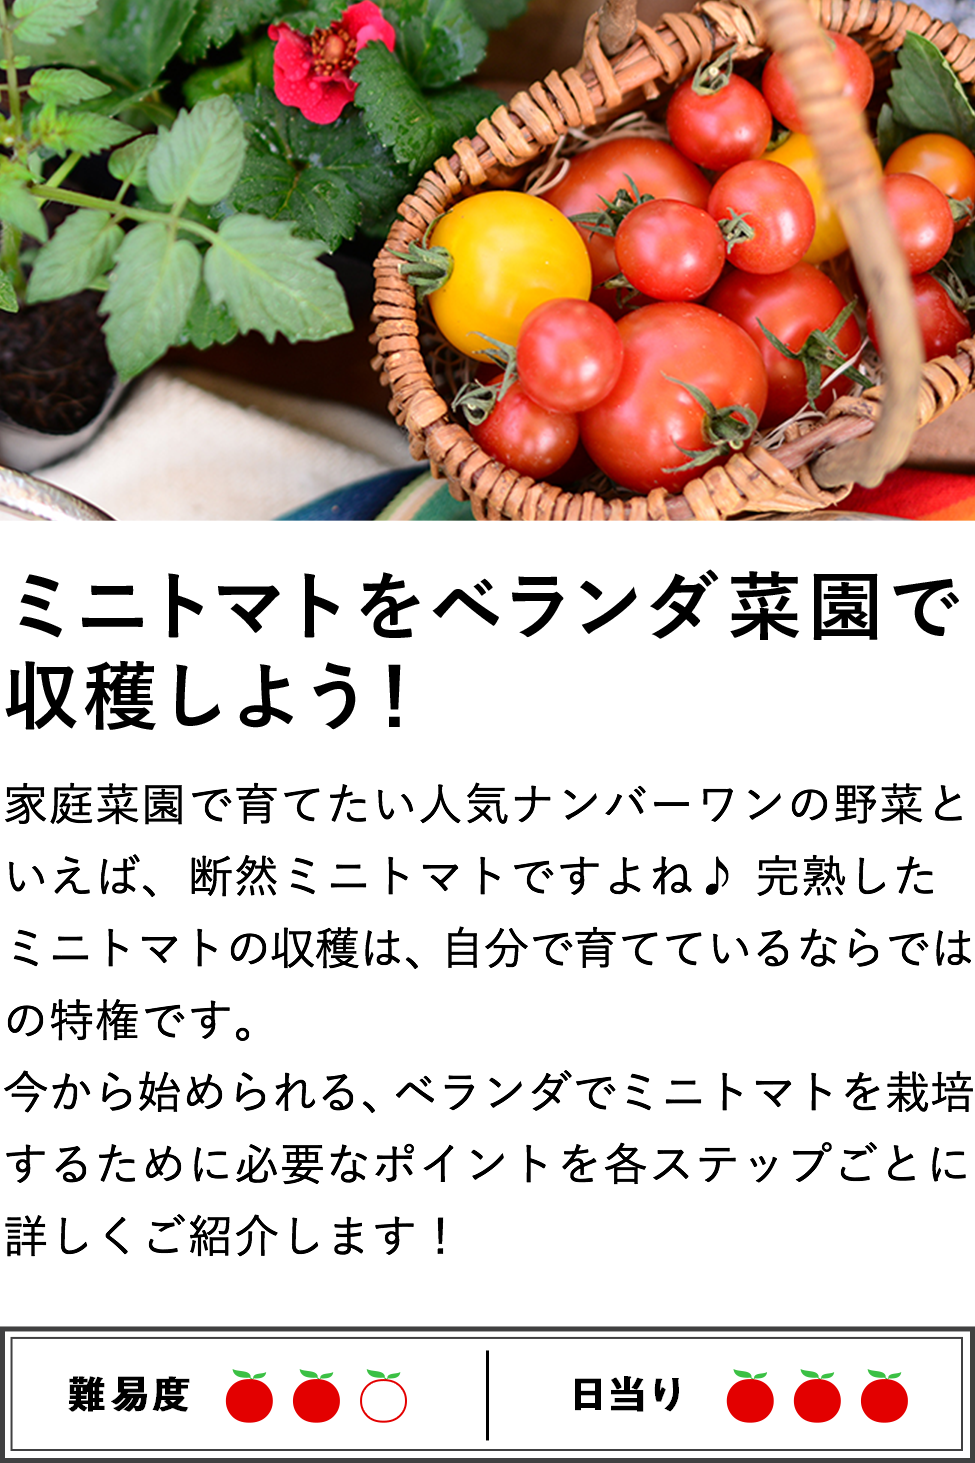 ミニトマトをベランダ菜園で収穫しよう！
家庭菜園で育てたい人気ナンバーワンの野菜といえば、断然ミニトマトですよね♪ 完熟したミニトマトの収穫は、自分で育てているならではの特権です。
今から始められる、ベランダでミニトマトを栽培するために必要なポイントを各ステップごとに詳しくご紹介します！